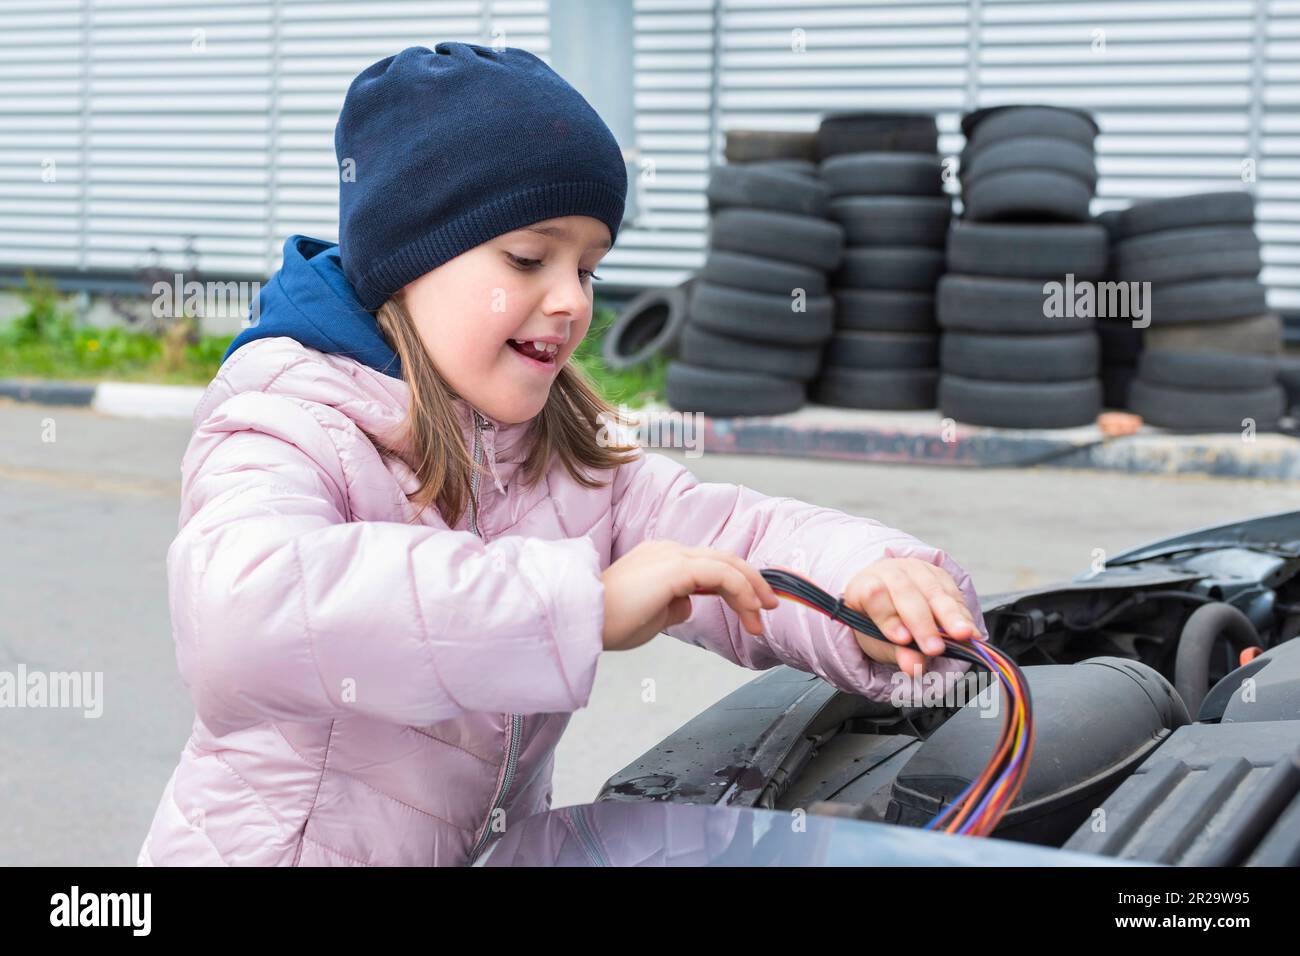 Un bambino sta riparando un'automobile all'aperto. Servizio di riparazione. Servizio auto, concetto di riparazione auto Foto Stock